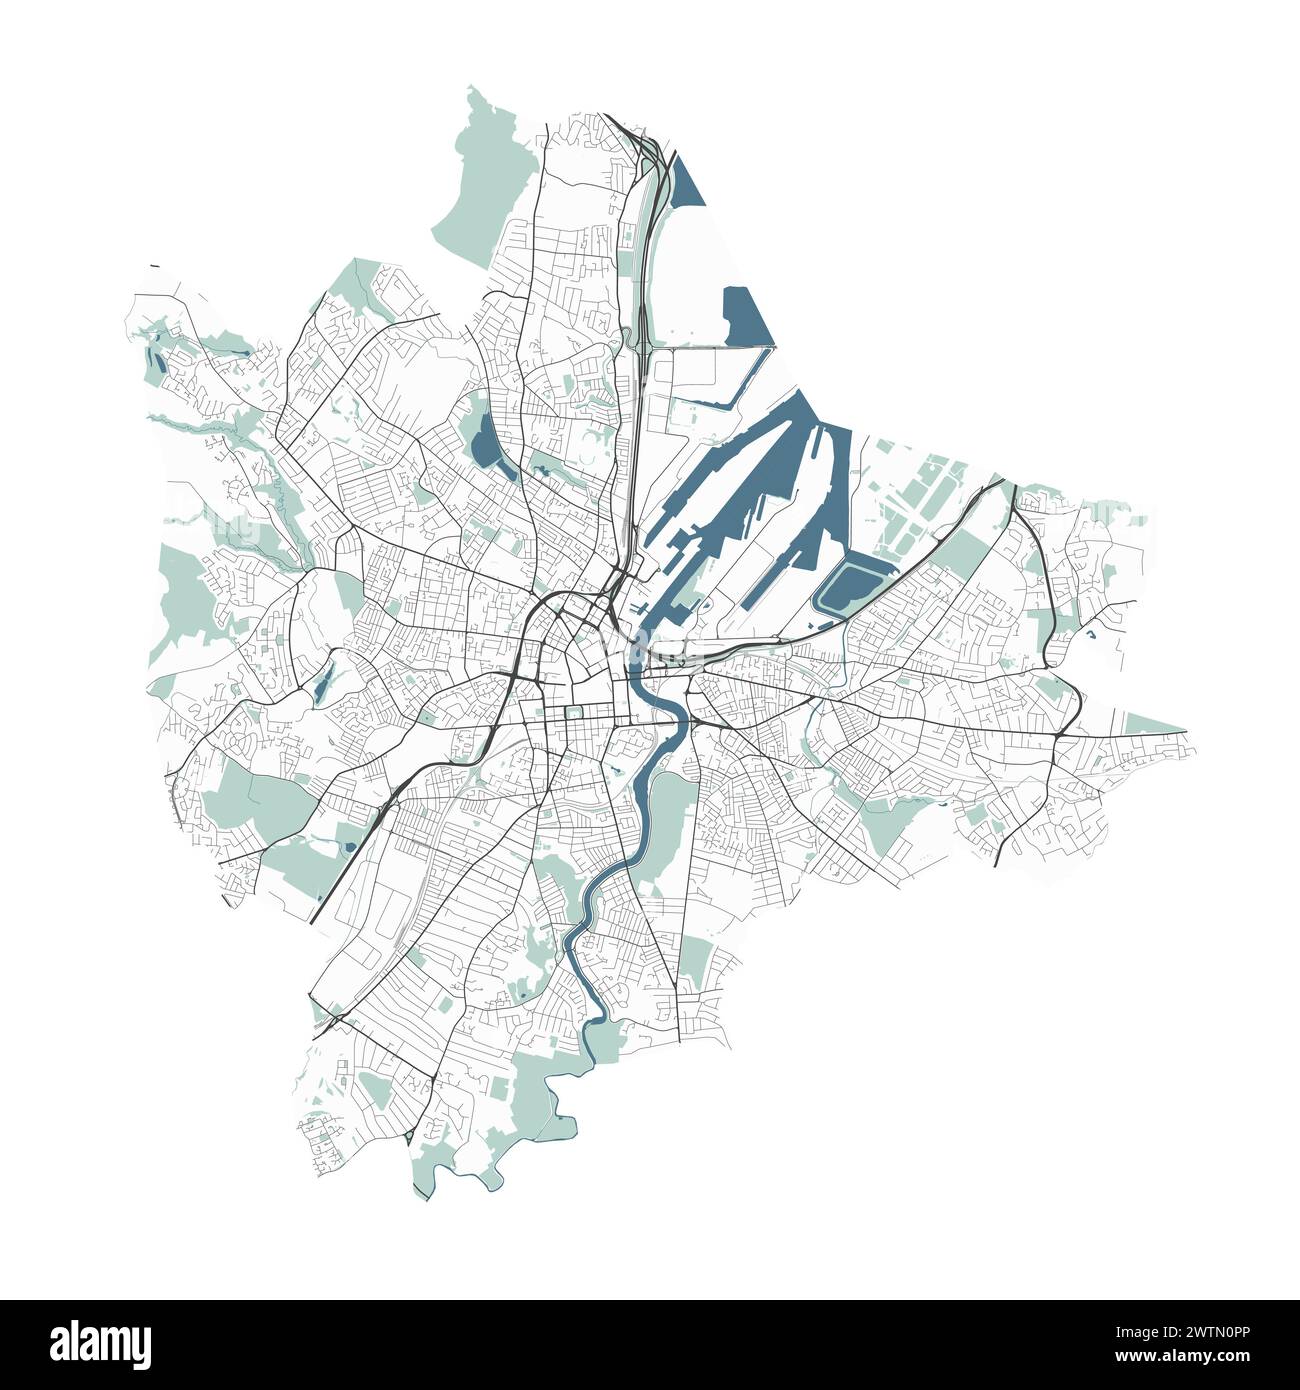 Karte von Belfast, Nordirland. Detaillierte Stadtvektorkarte, Metropolregion mit Grenze. Straßenkarte mit Straßen und Wasser. Stock Vektor